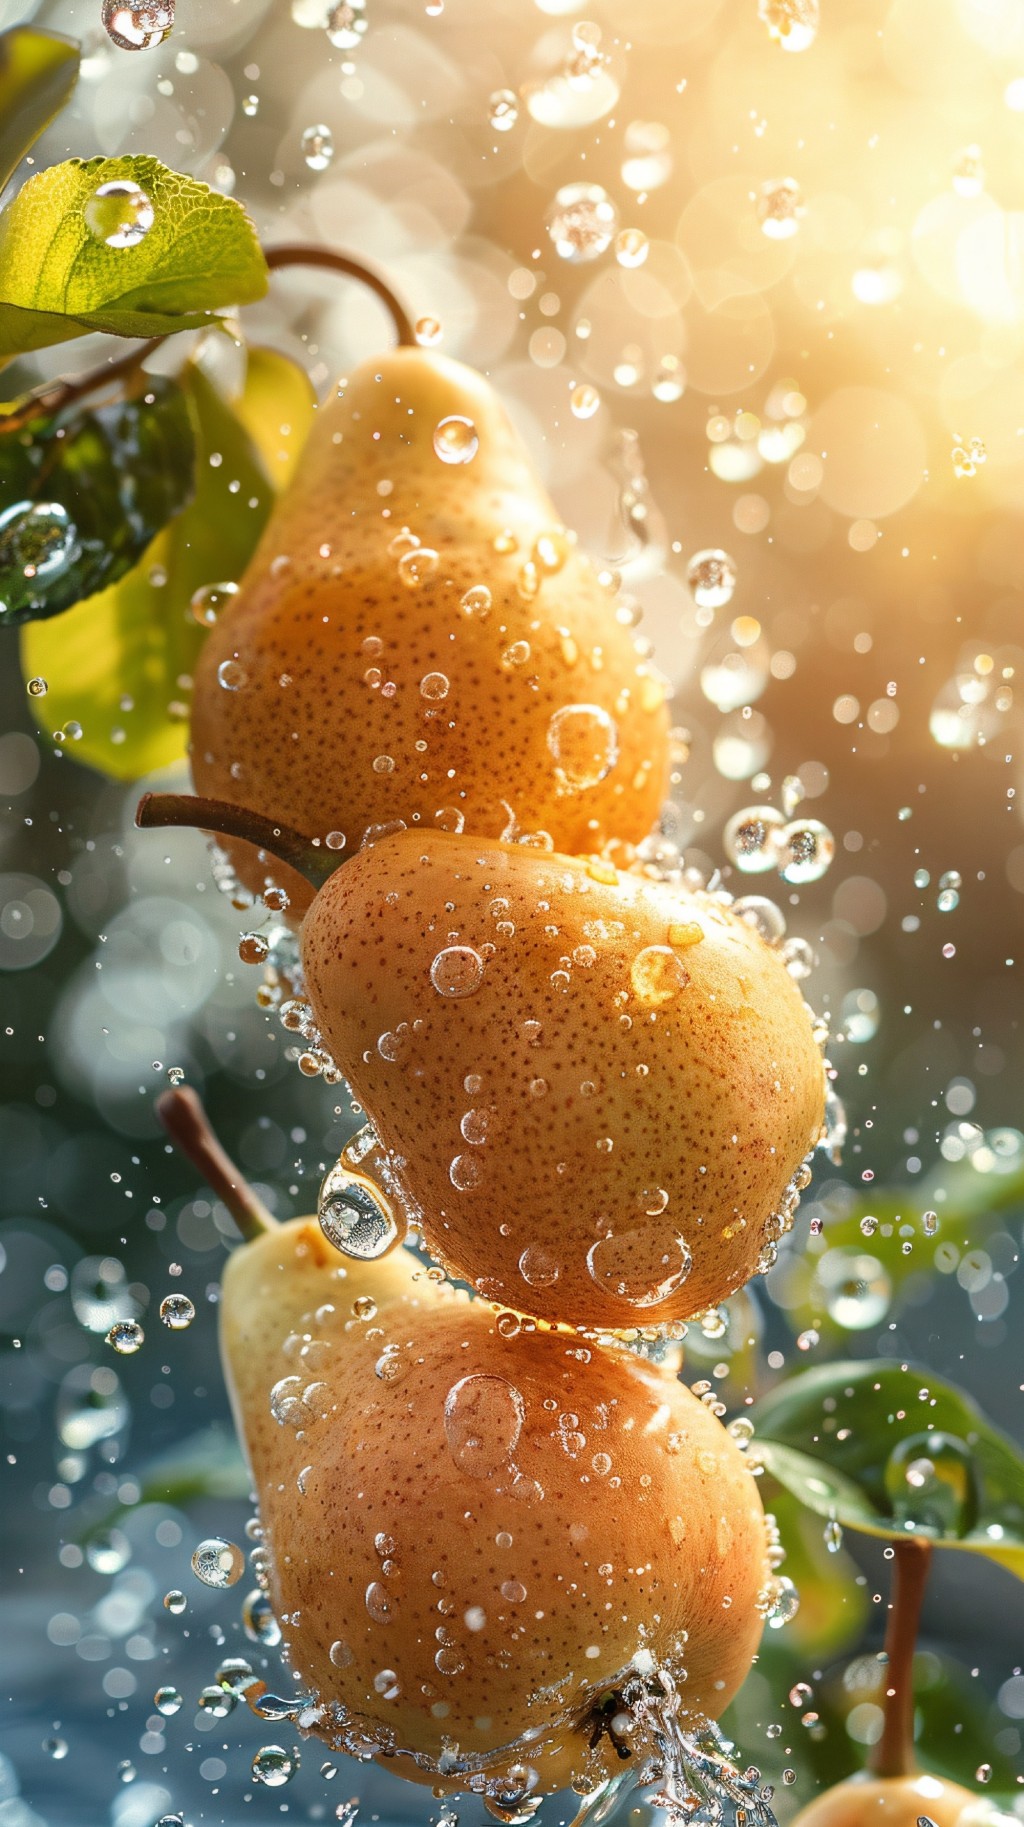 水果摄影写真系列——梨